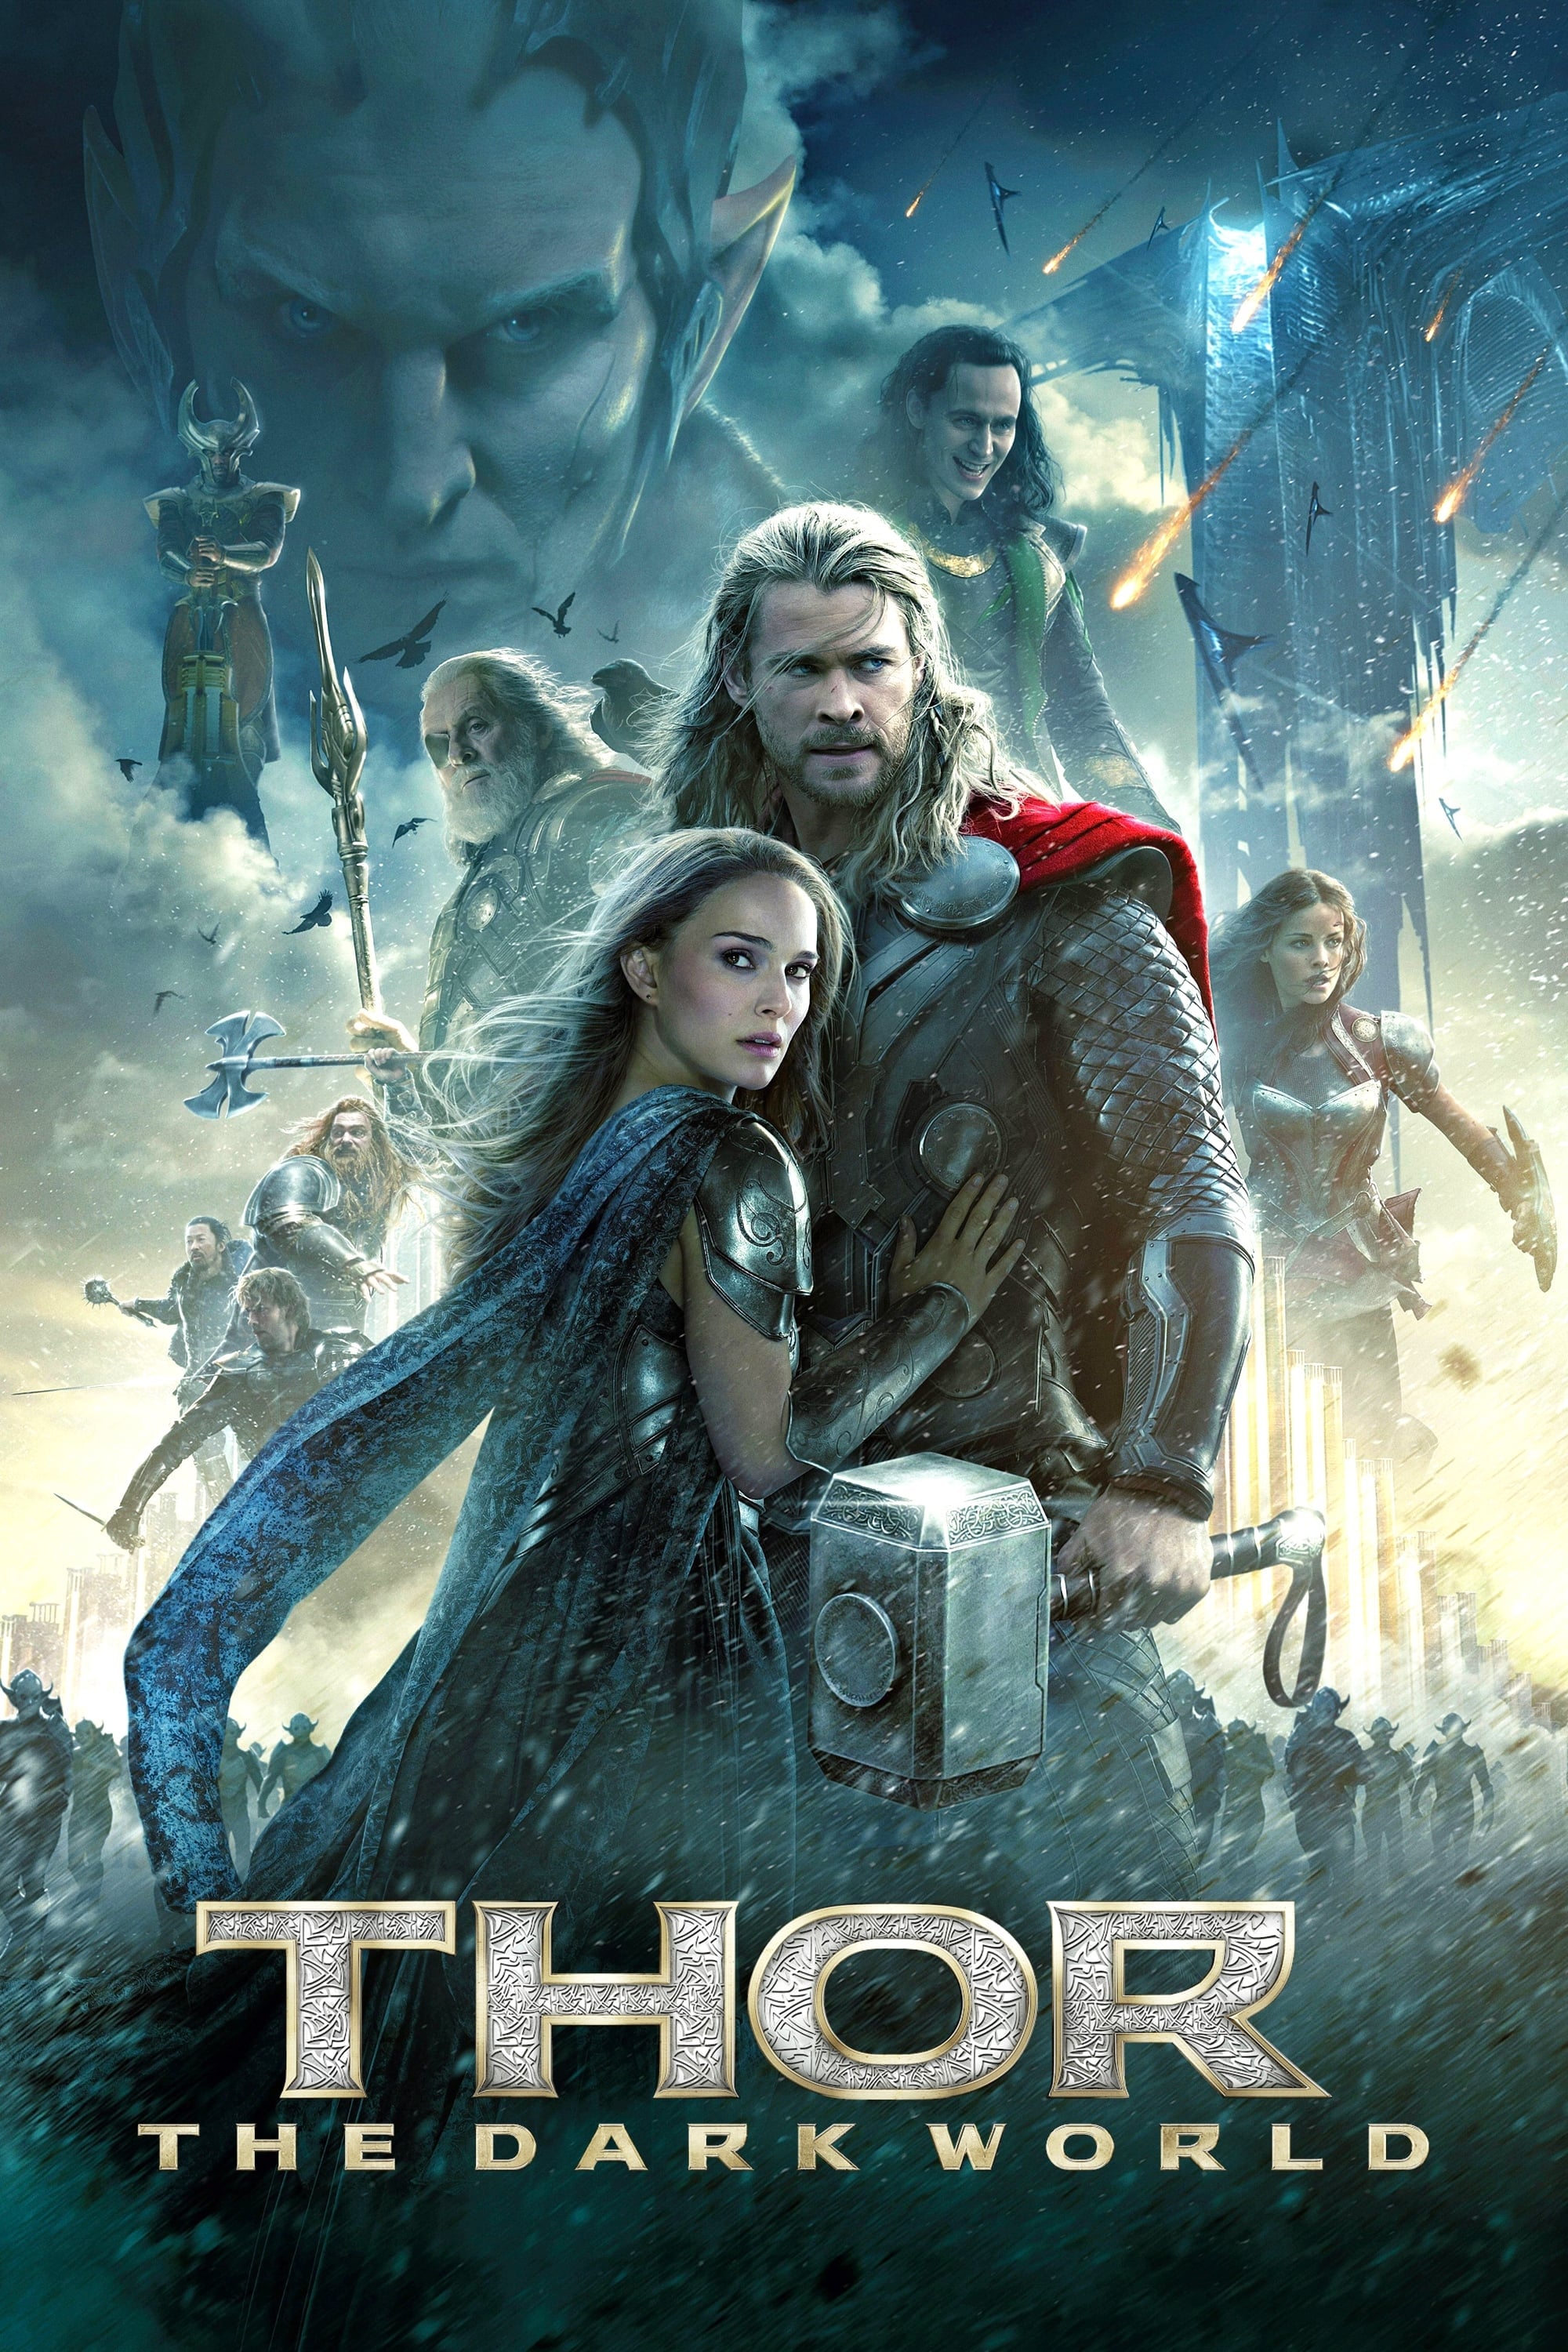 Chris Hemsworth aparece pelado em trailer oficial de “Thor